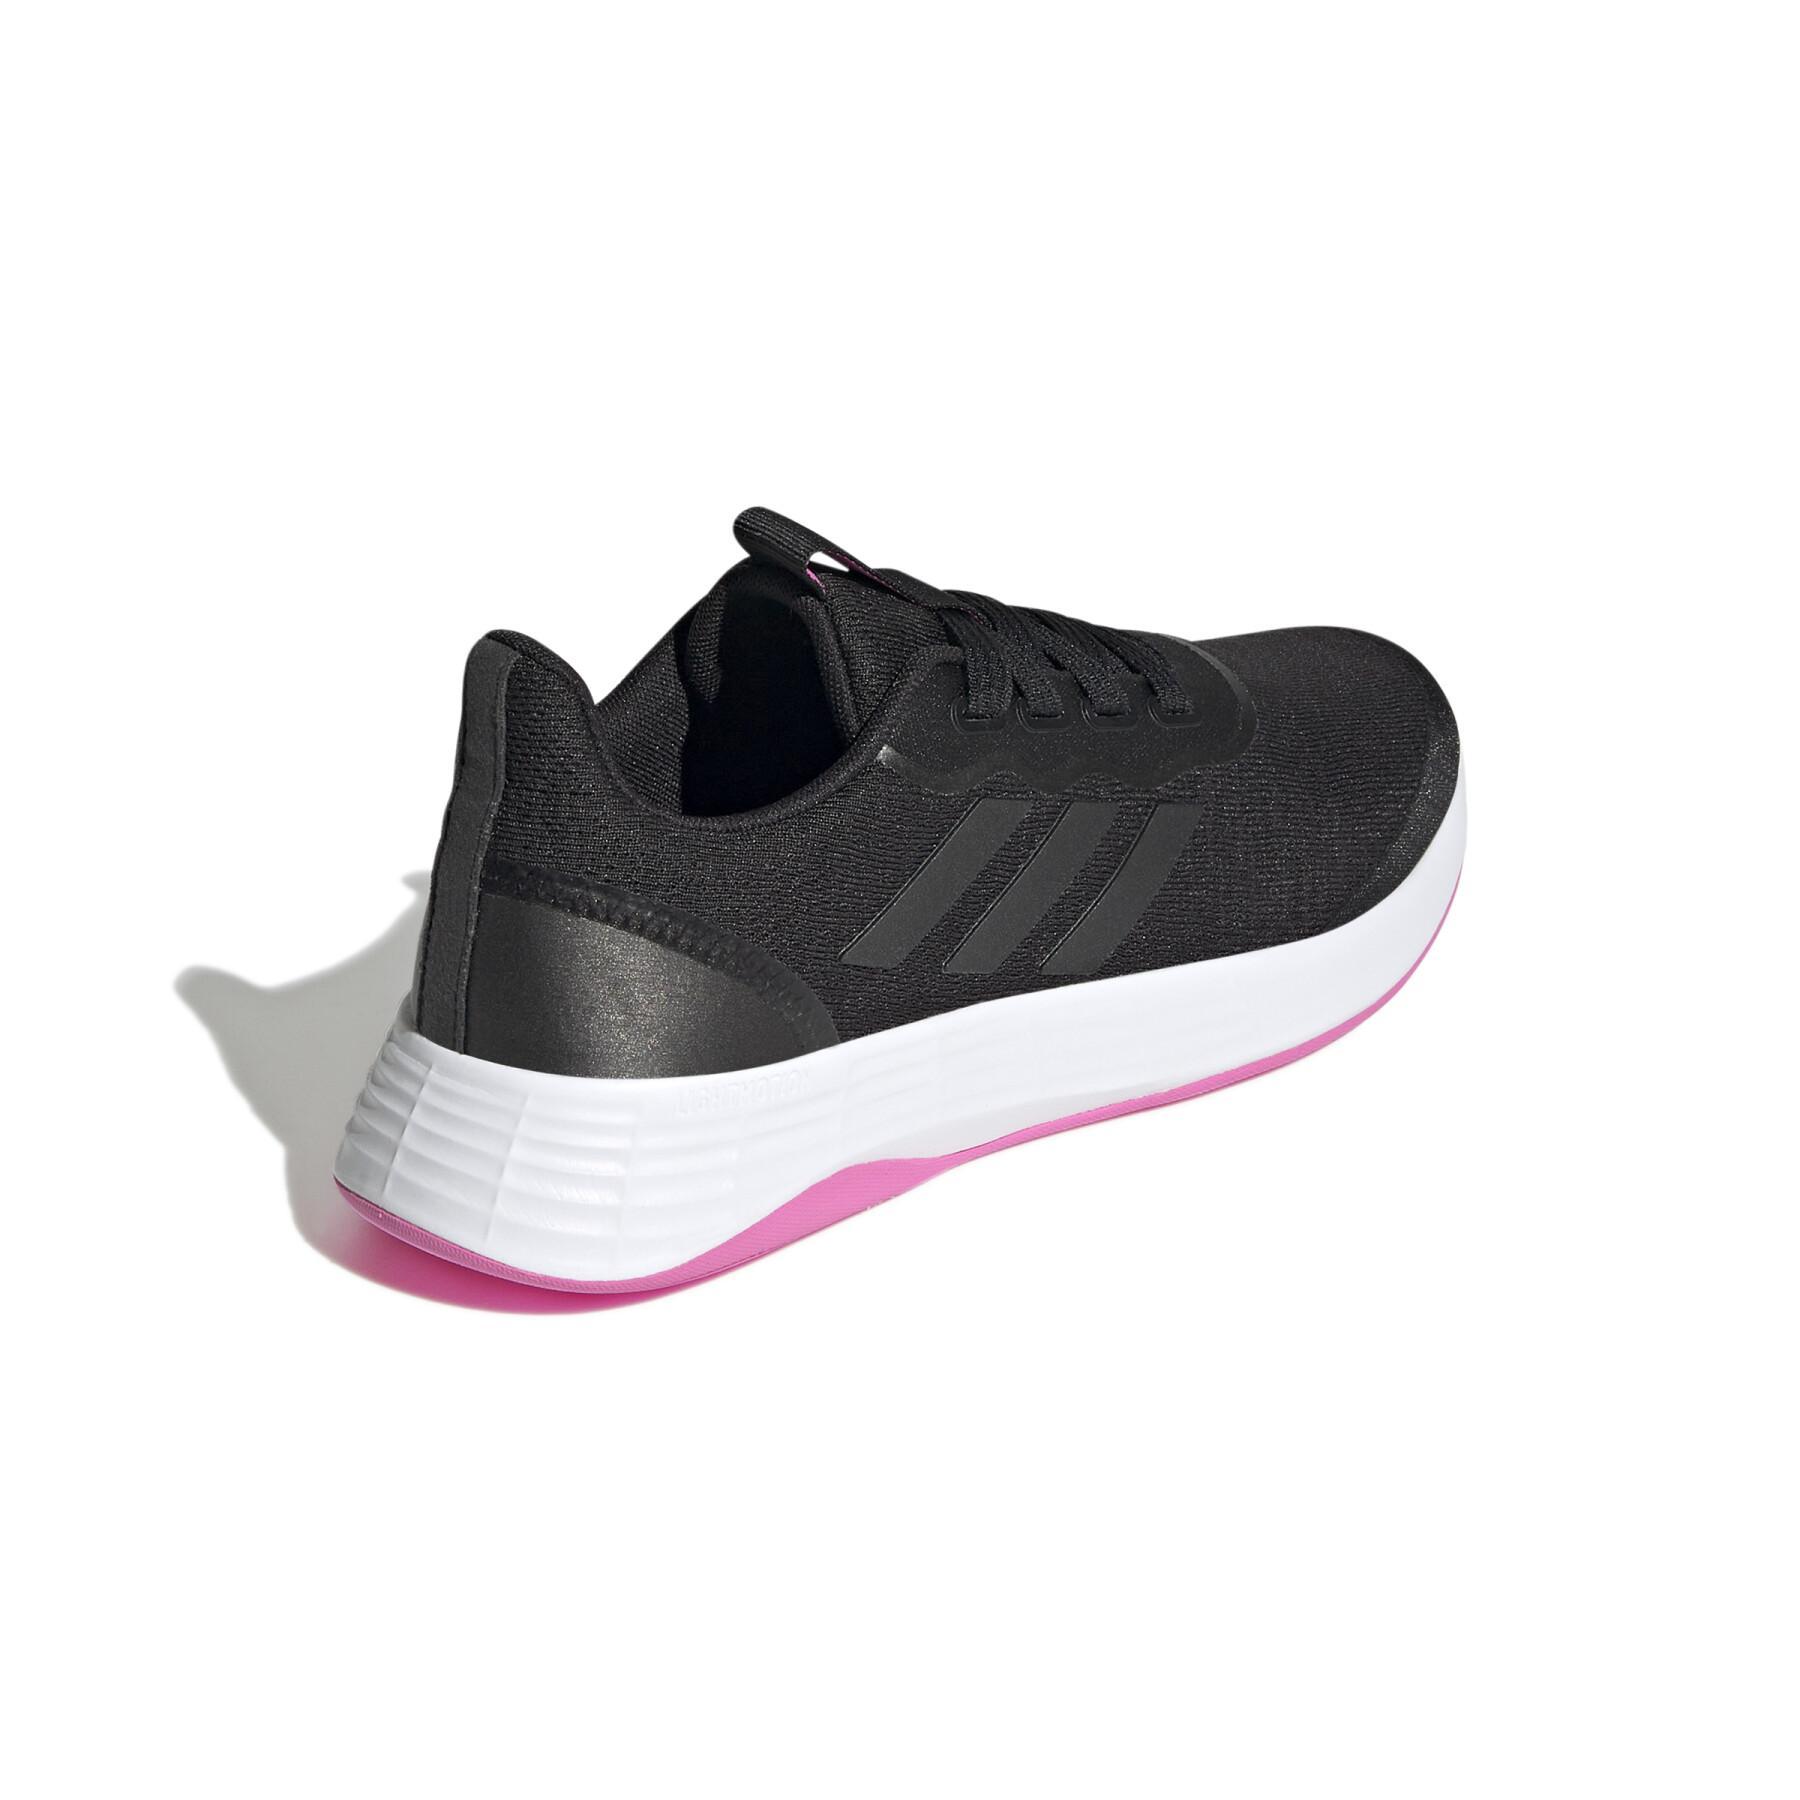 Hardloopschoenen voor dames adidas QT Racer Sport